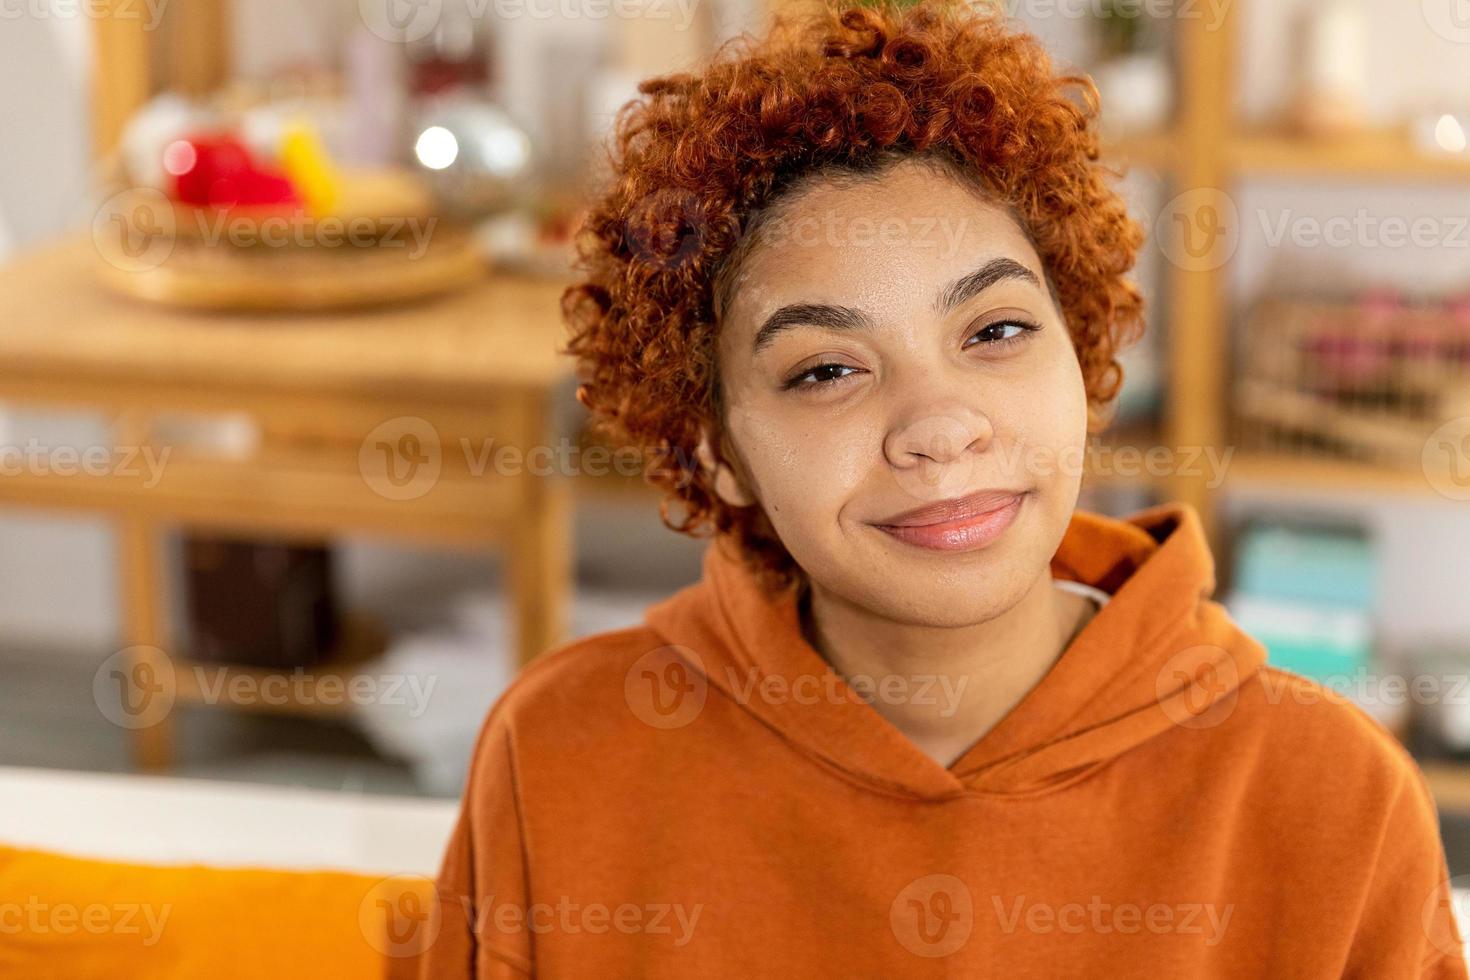 Schönes afrikanisch-amerikanisches Mädchen mit Afro-Frisur lächelnd auf dem Sofa zu Hause drinnen sitzend. Junge afrikanische Frau mit lockigem Haar lächelt. freiheit glück sorglos glückliche menschen konzept. foto